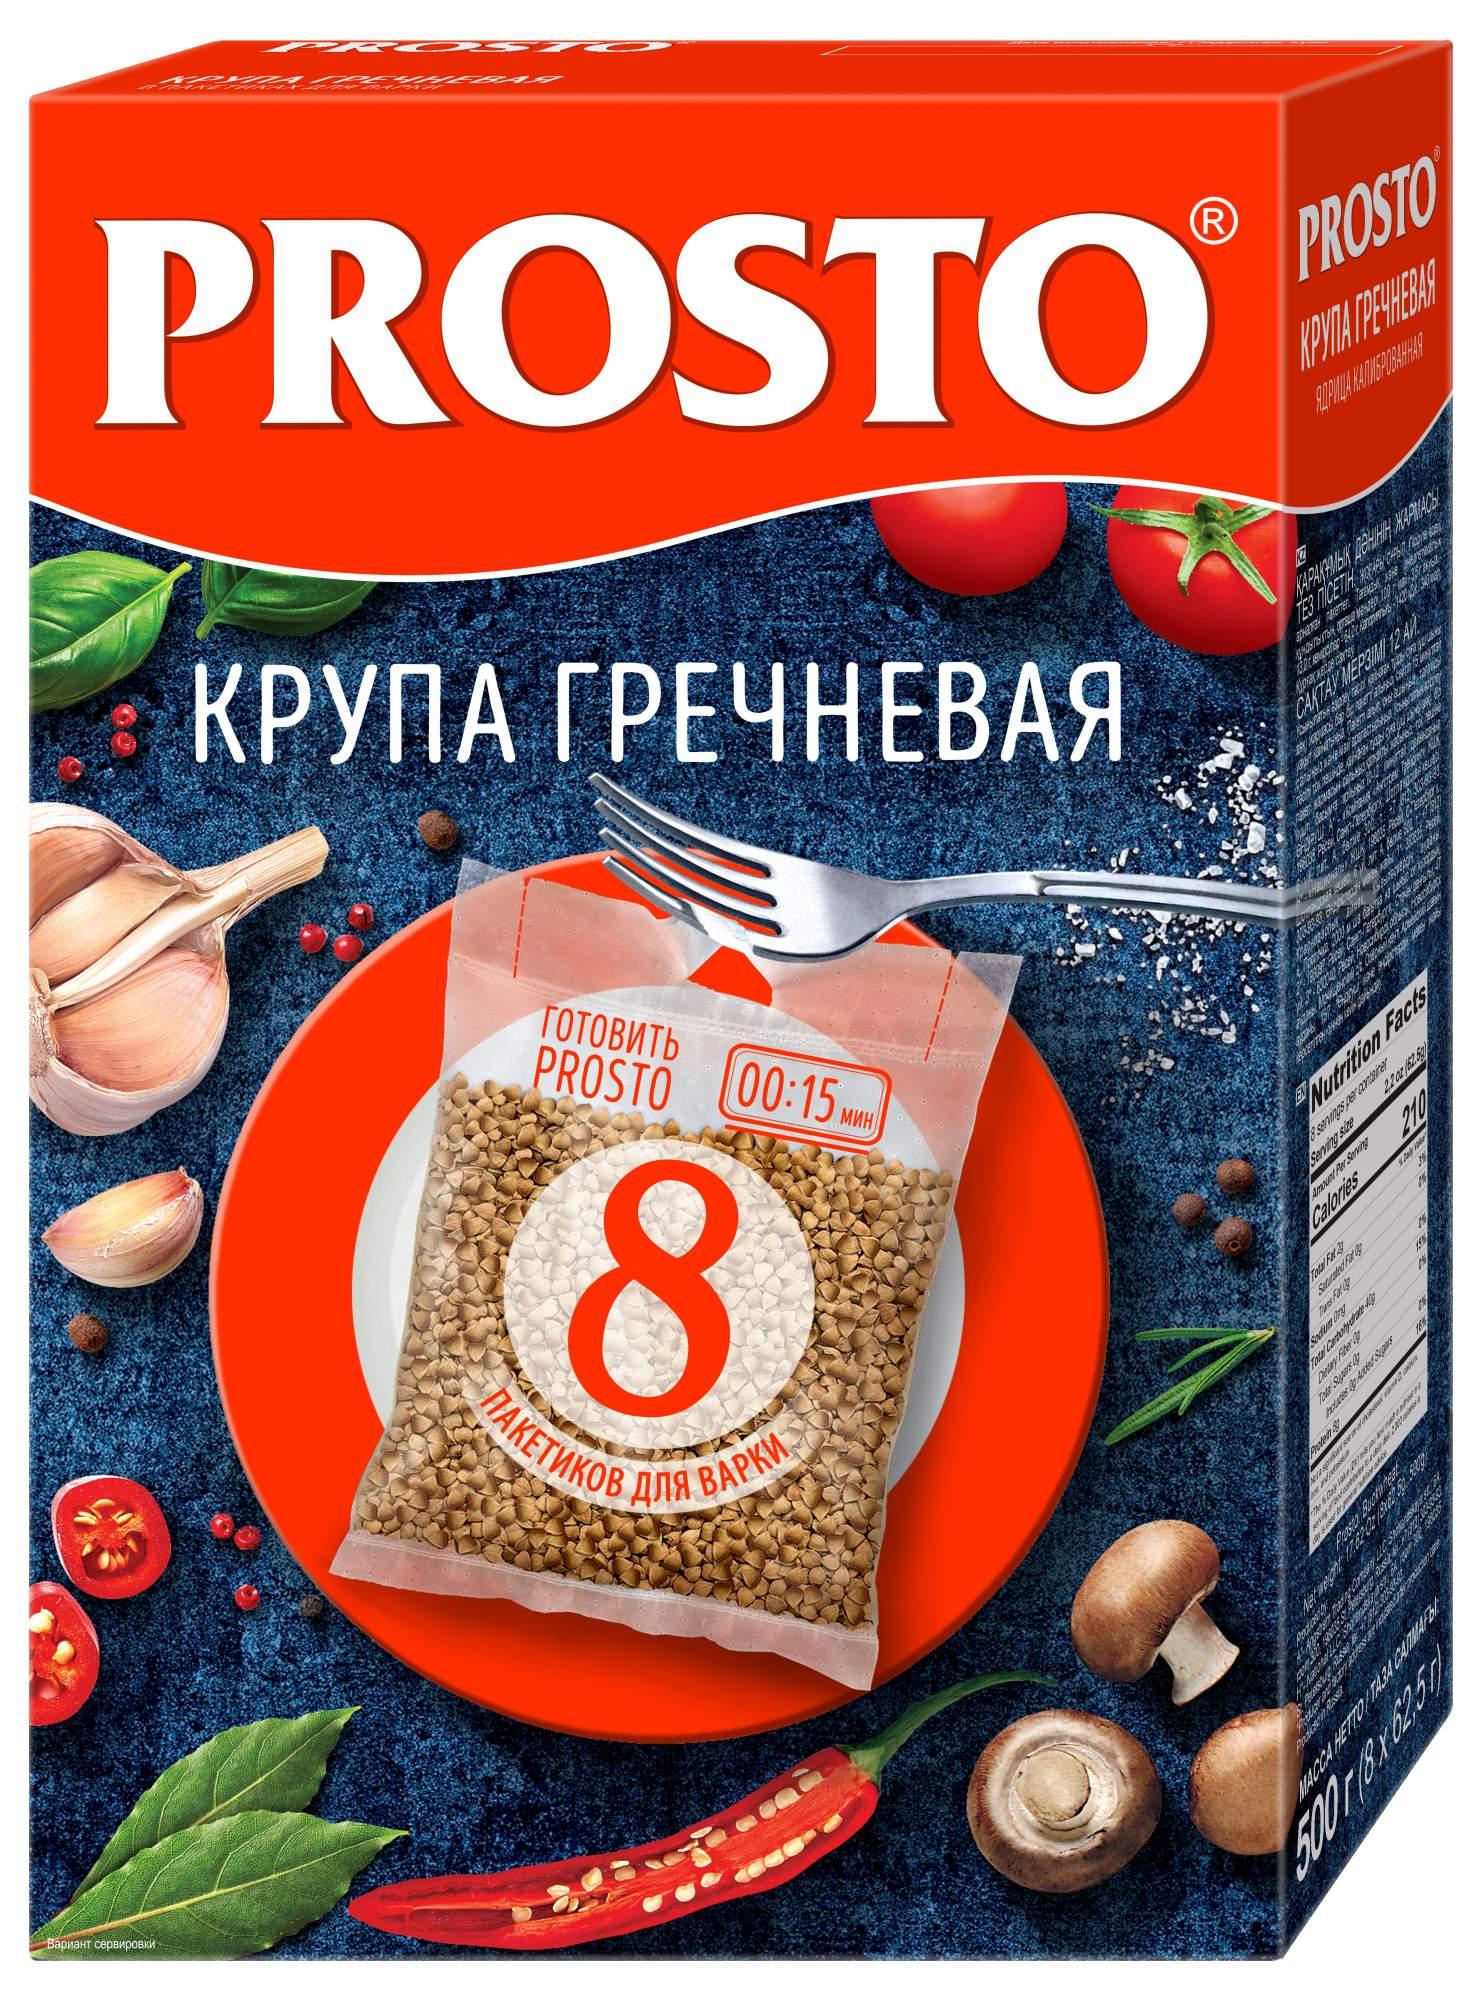 Крупа гречневая PROSTO в варочных пакетиках, 8 порций, 500 гр., картон